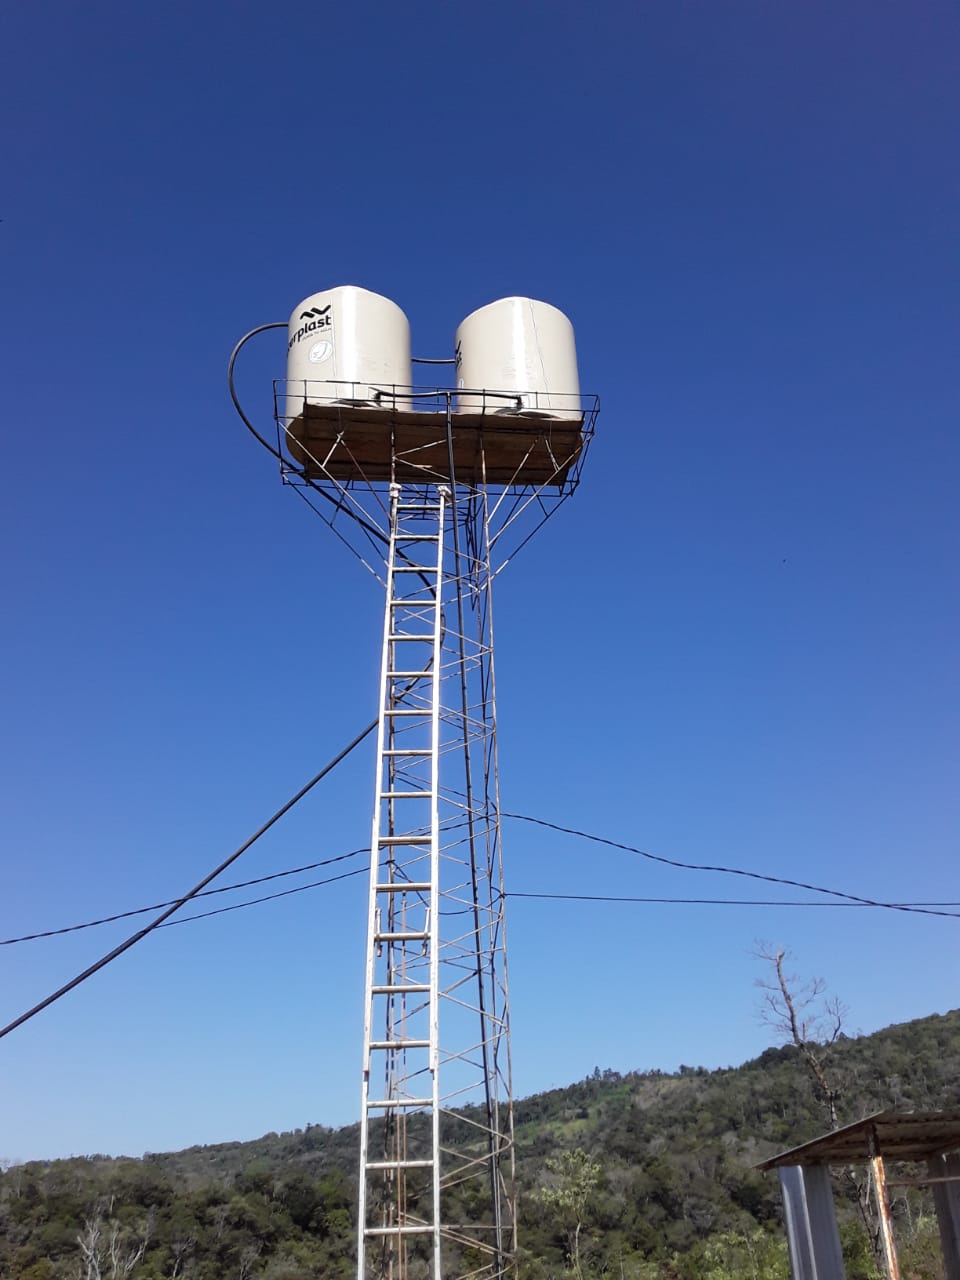 Torre con tanques donados para la aldea Monte Virgen